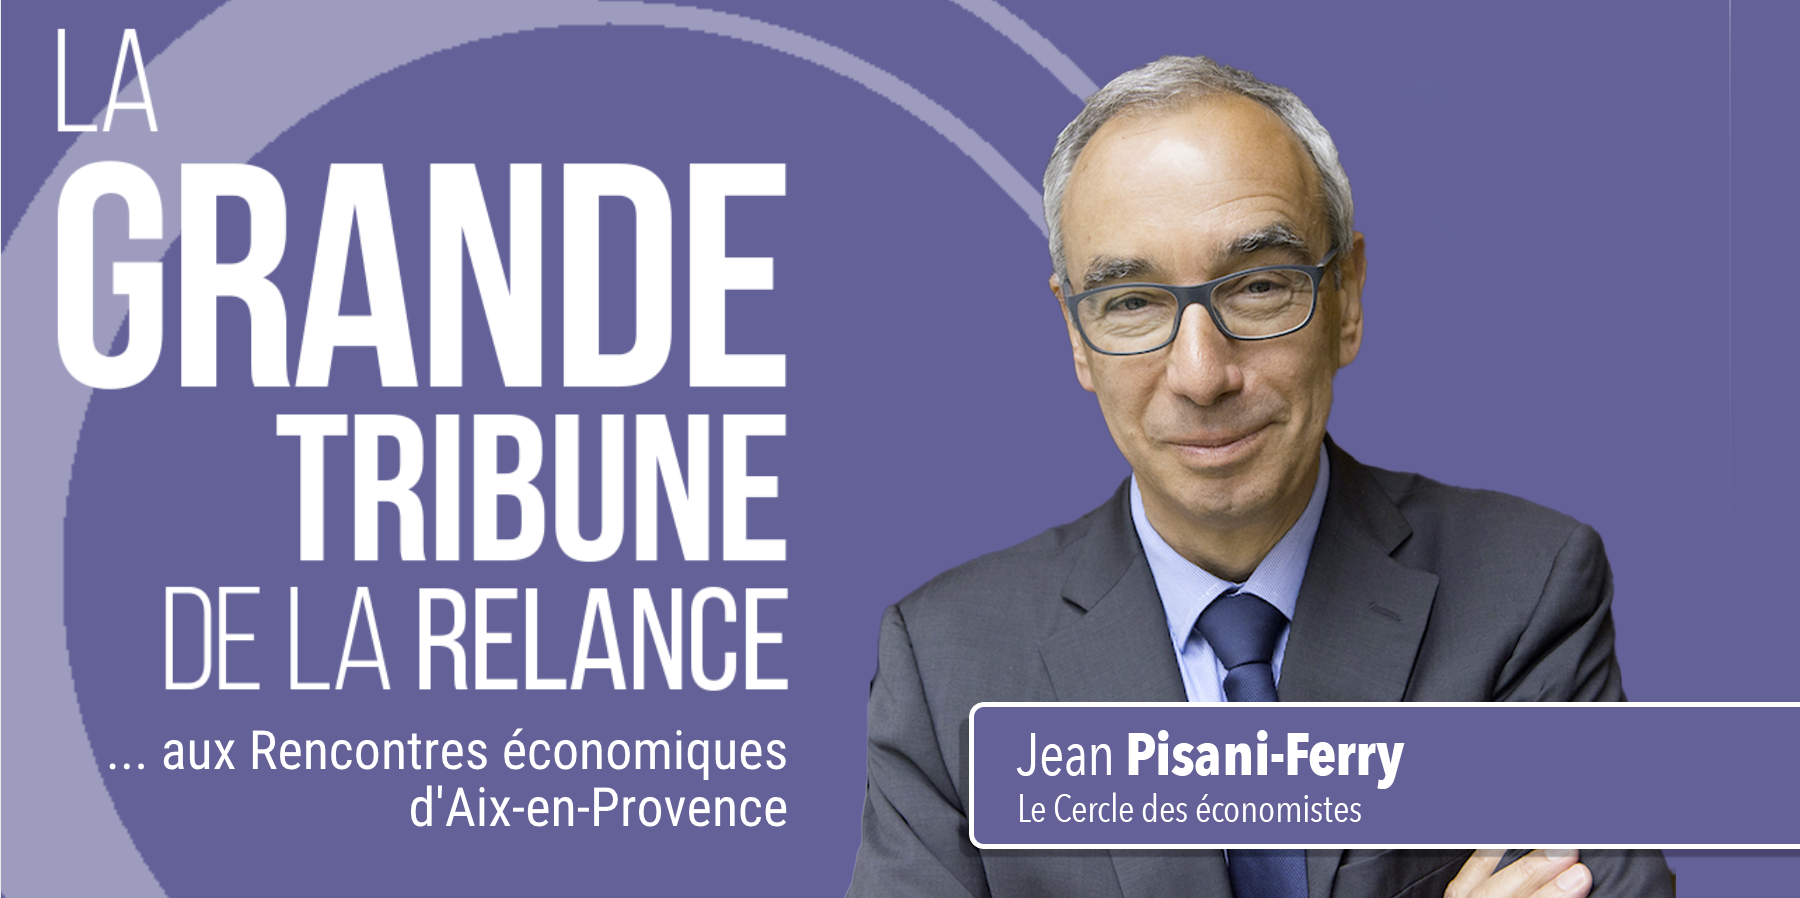 Jean Pisani-Ferry, Cercle des économistes : 